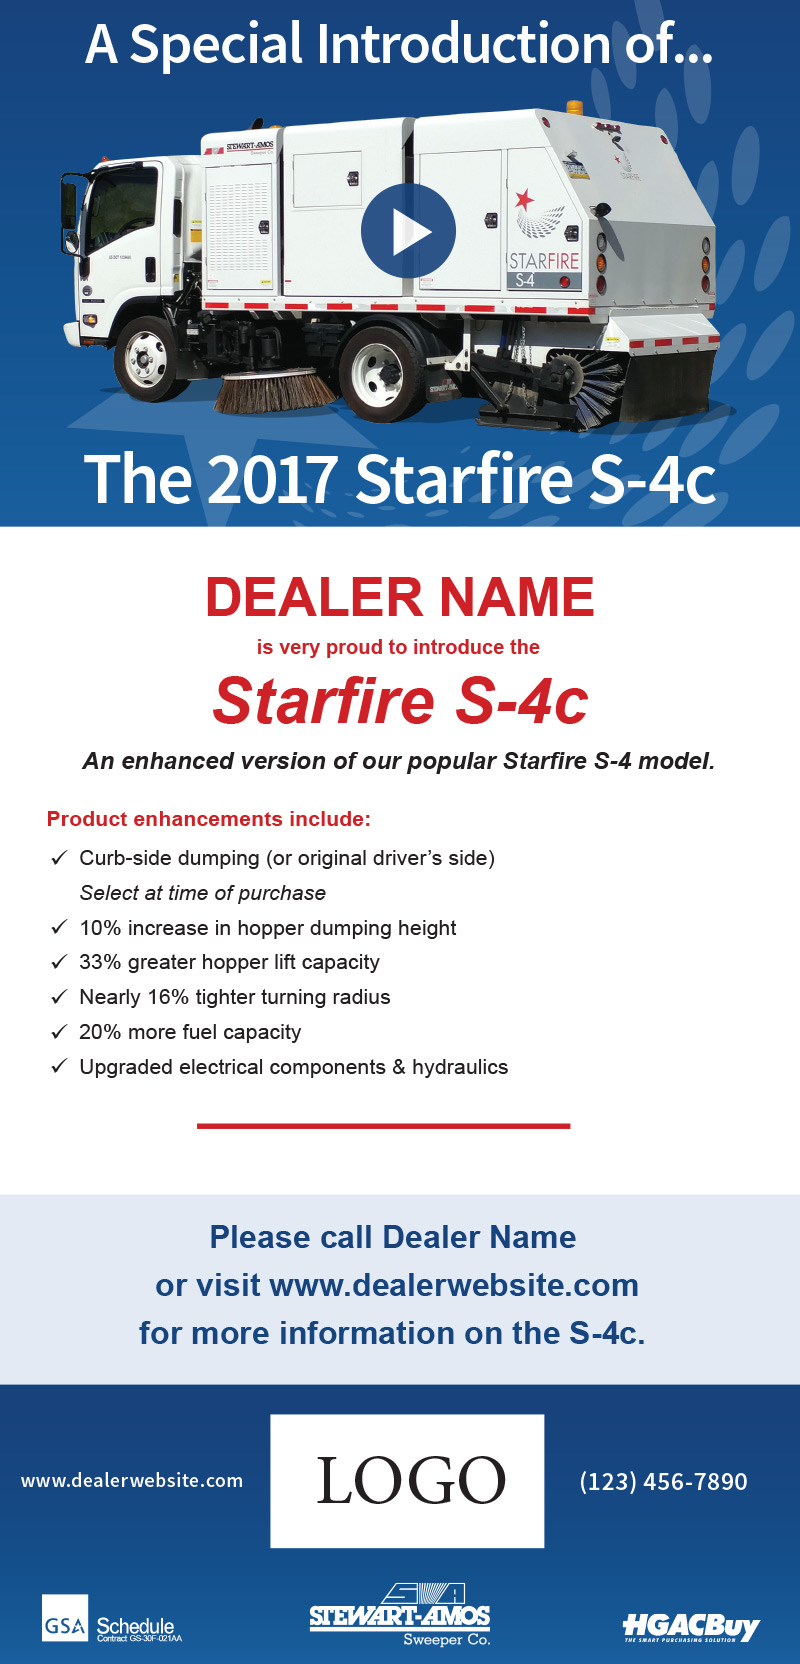 Starfire S-4c email